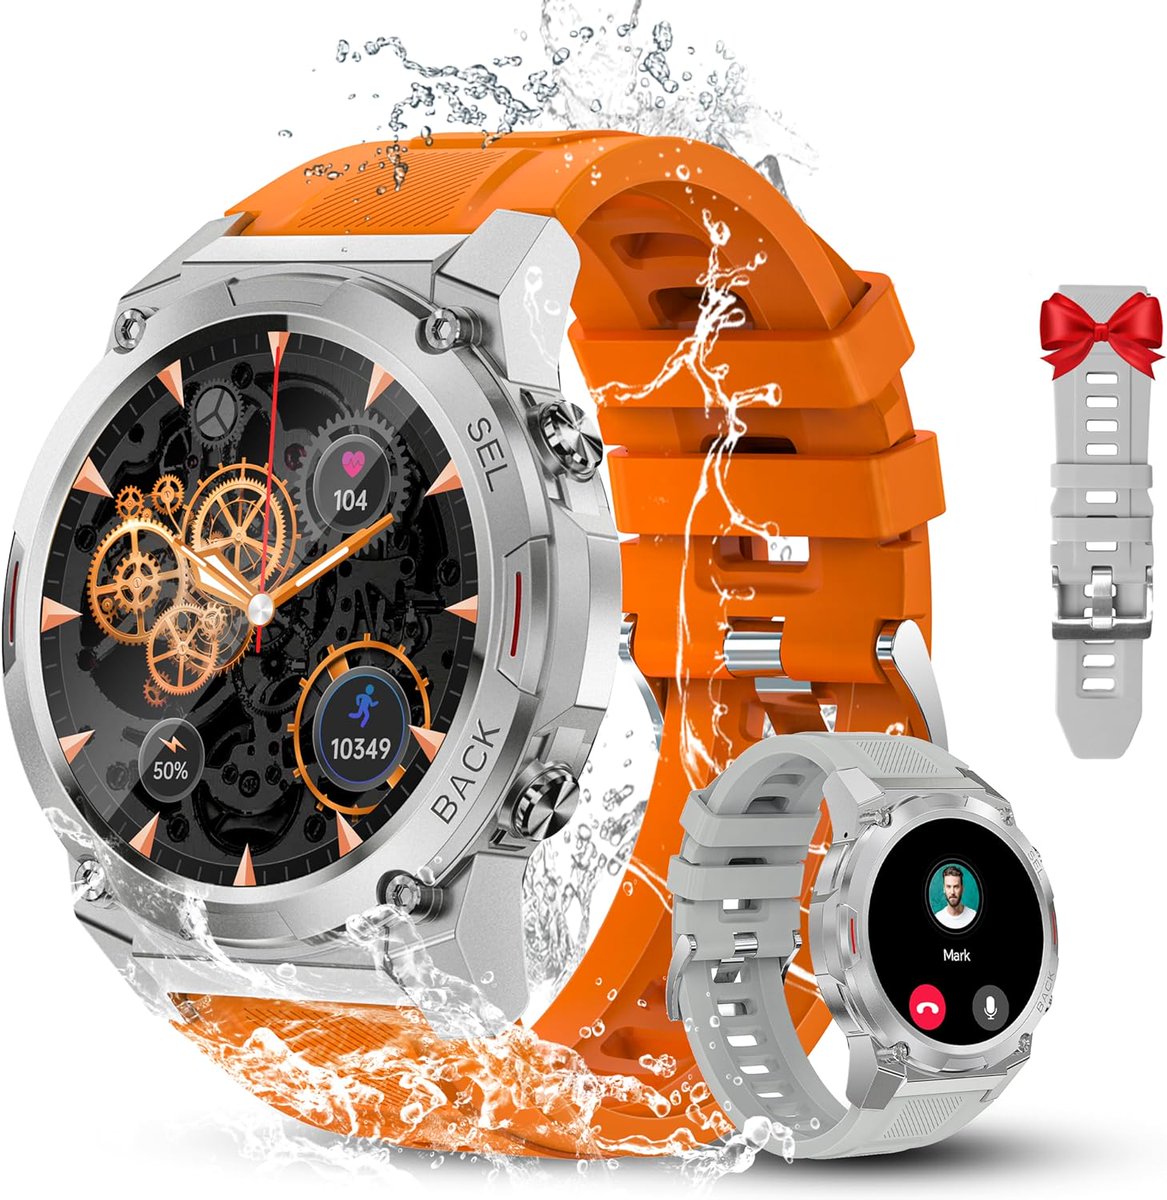 📱 Smartwatch Oukitel BT50 por 29,99€ ¡¡57% de descuento!!

👉 ift.tt/I50P8KY

💡 Más chollos en @cazandogangas